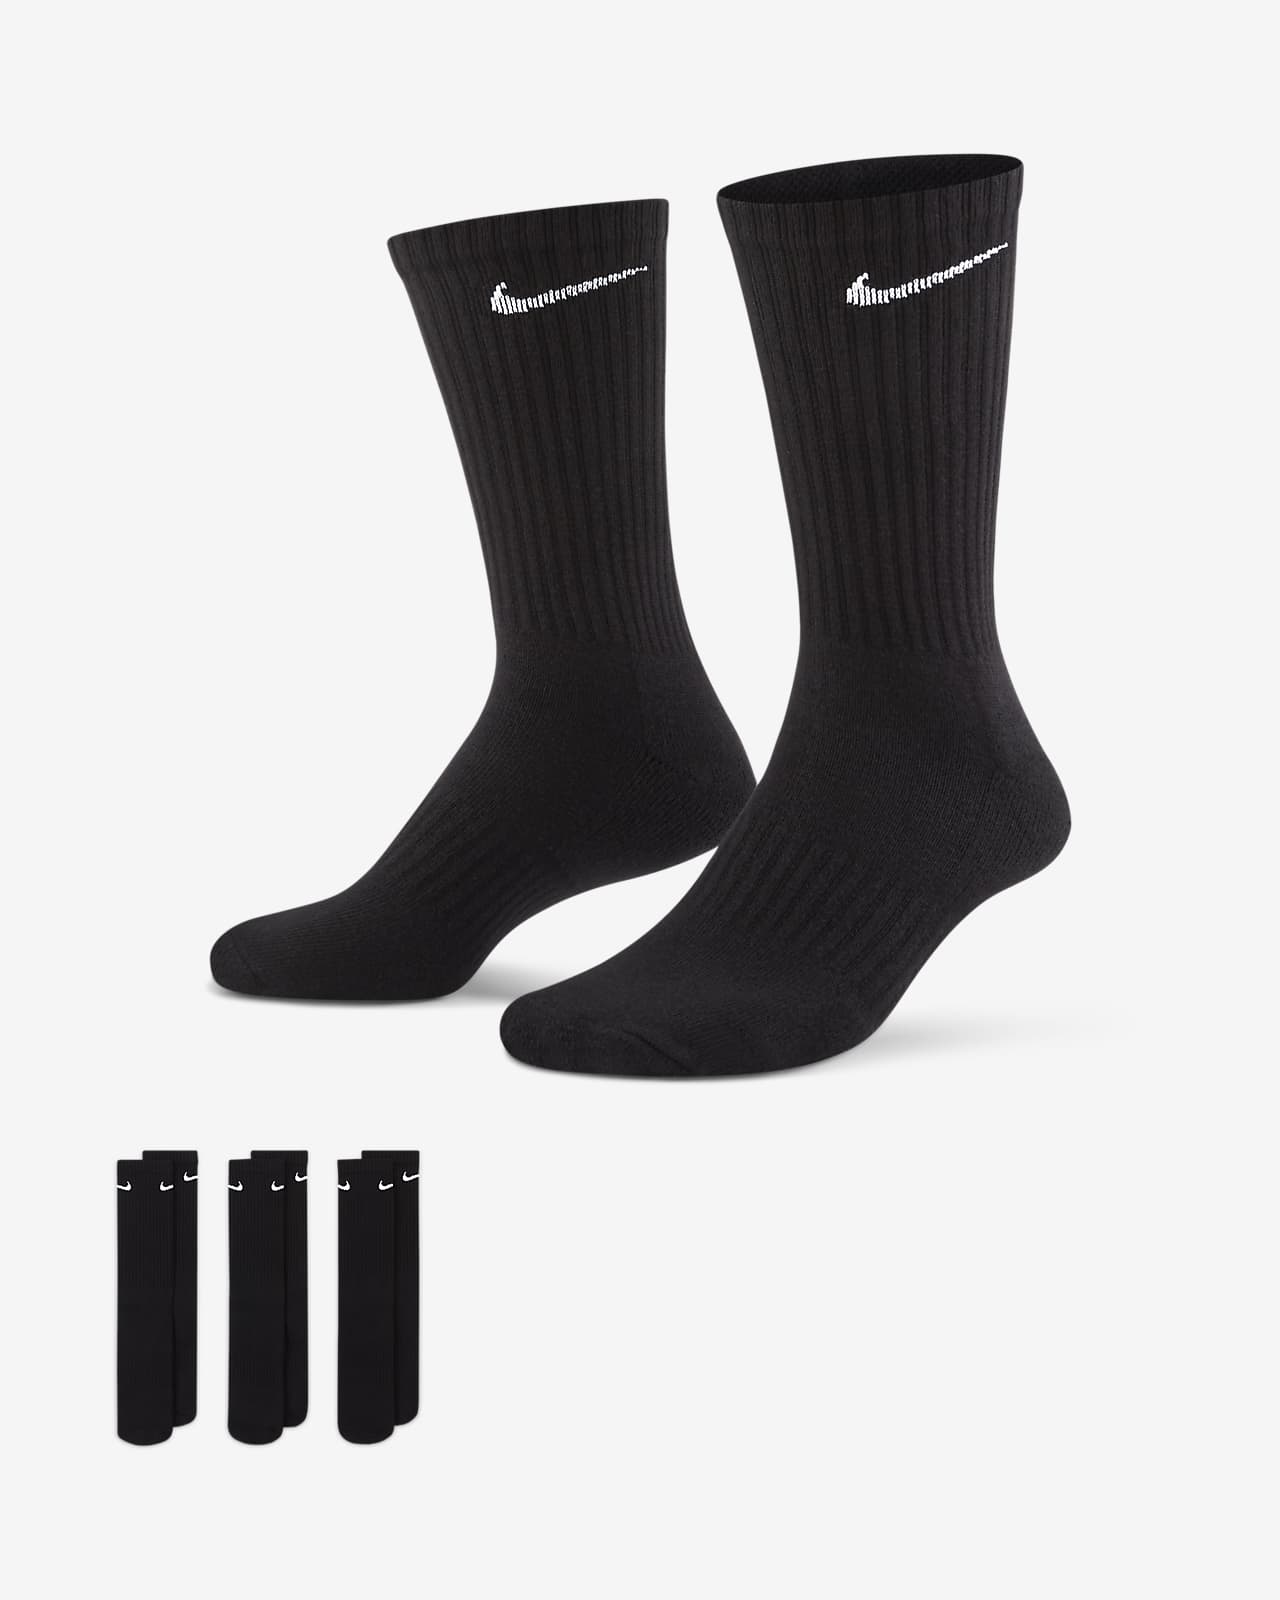 Κάλτσες προπόνησης μεσαίου ύψους Nike Everyday Cushioned (τρία ζευγάρια)